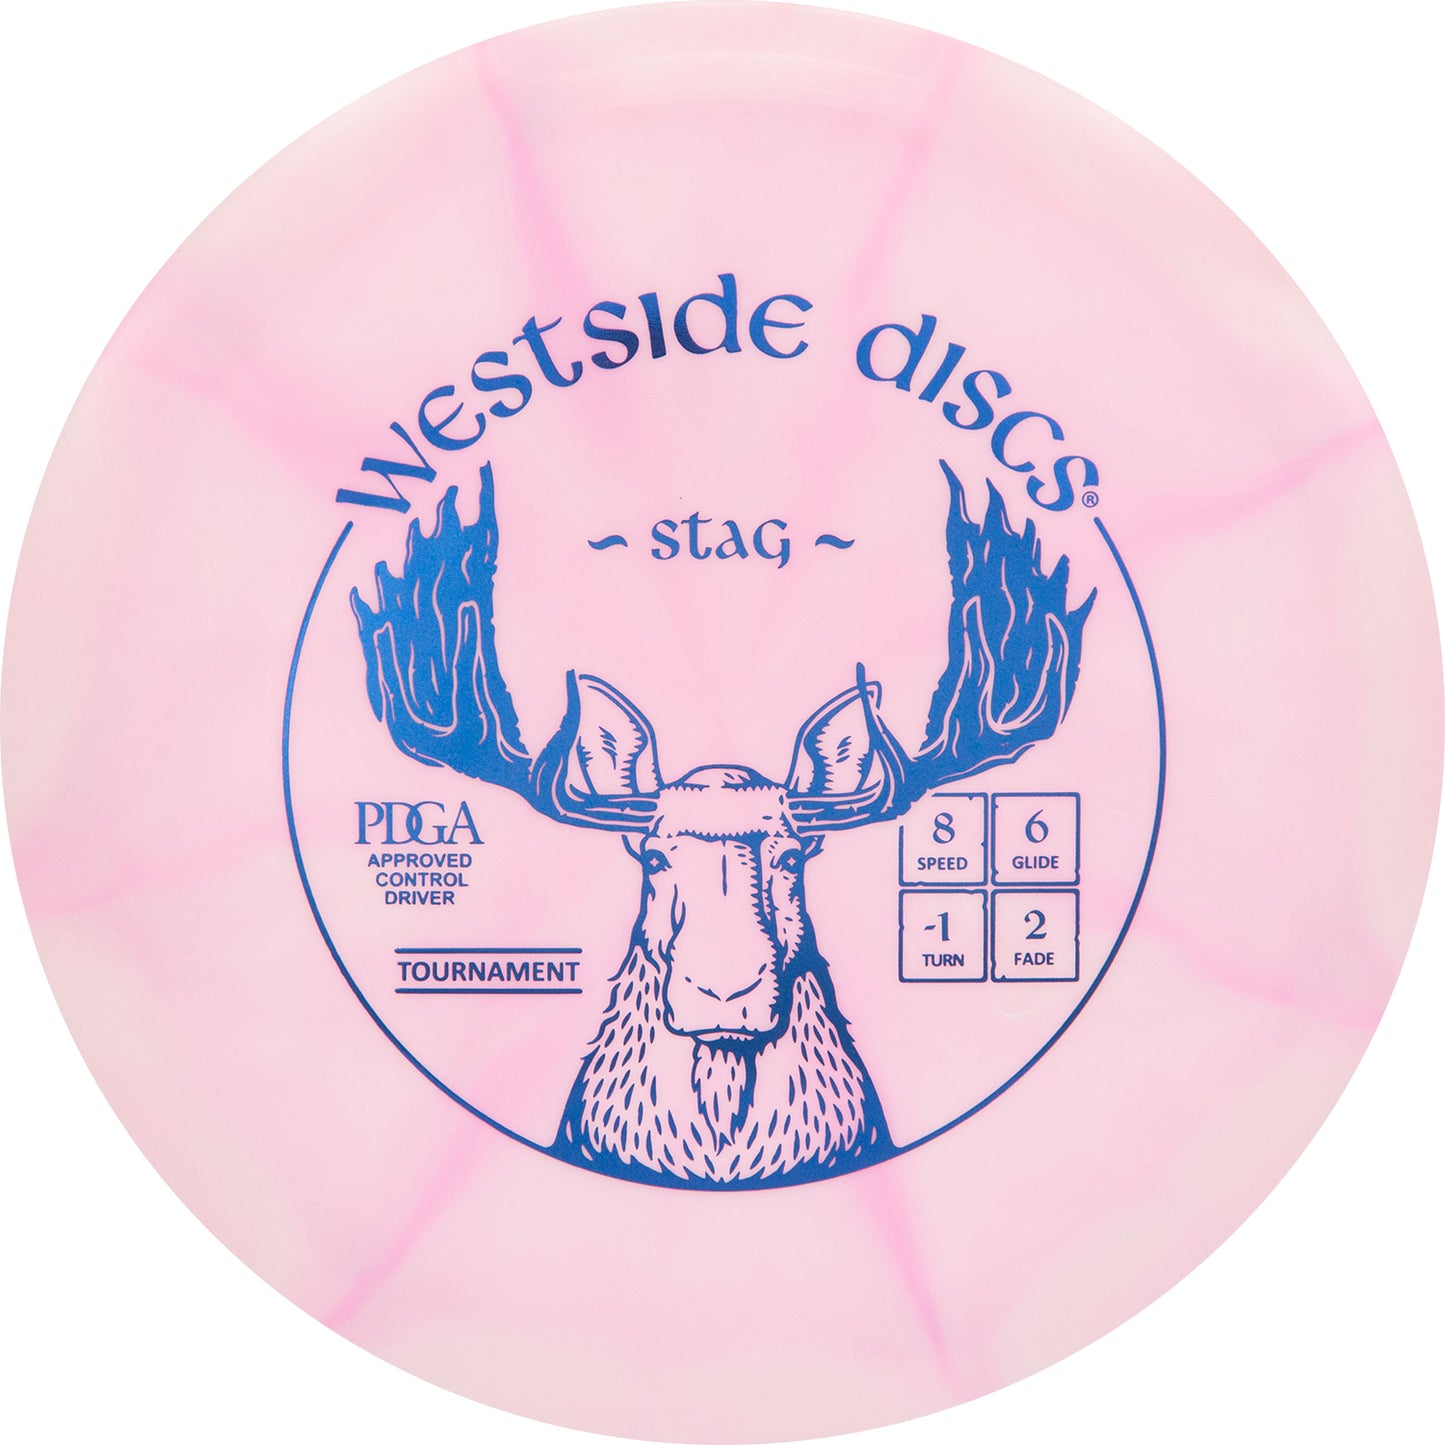 Westside Discs Origio Burst Stag